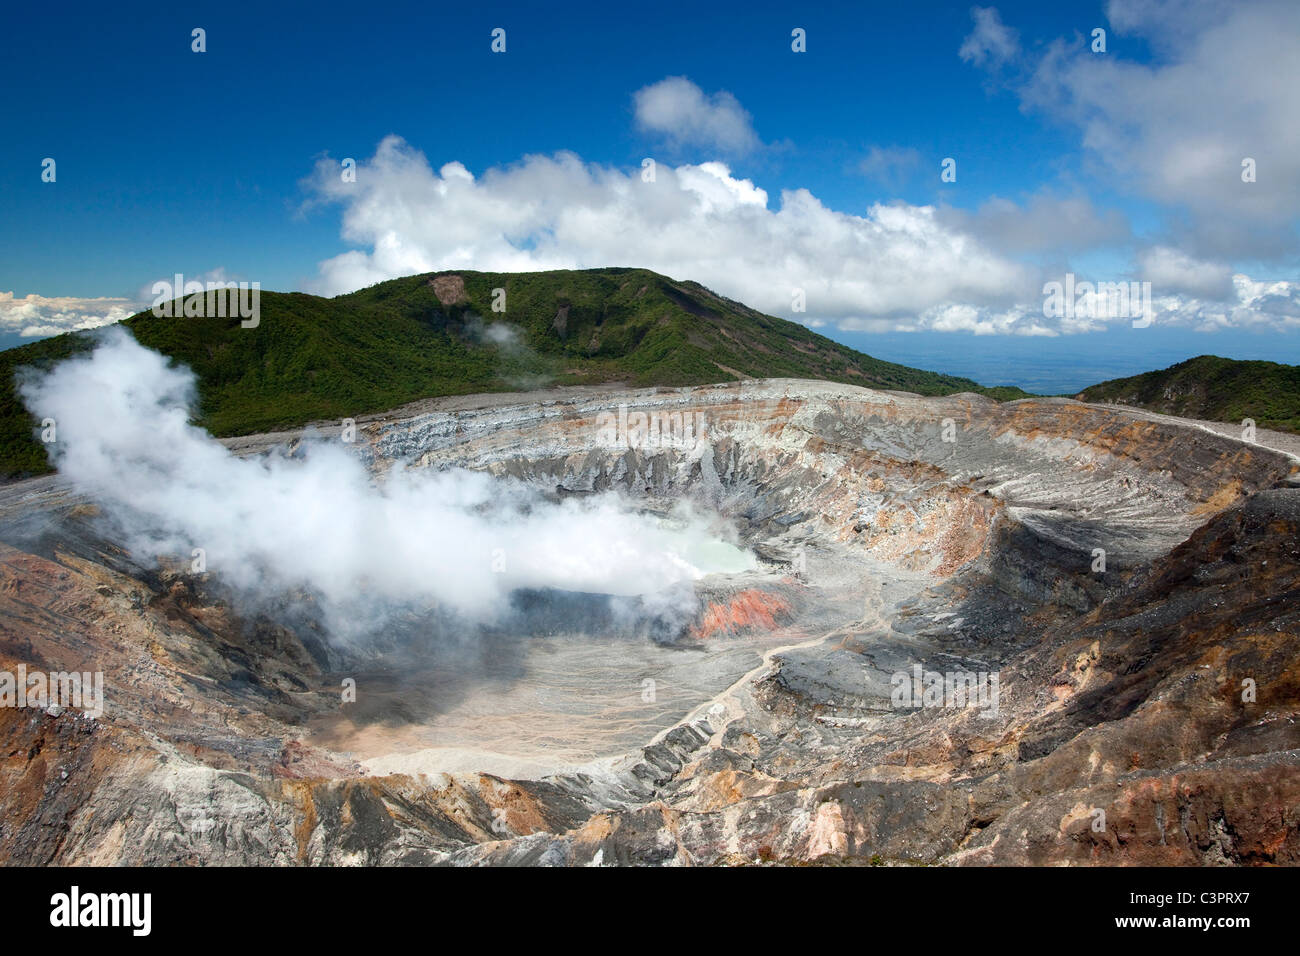 En el borde de un cráter activo volcán en el Parque Nacional Volcan Poas en Costa Rica. Foto de stock